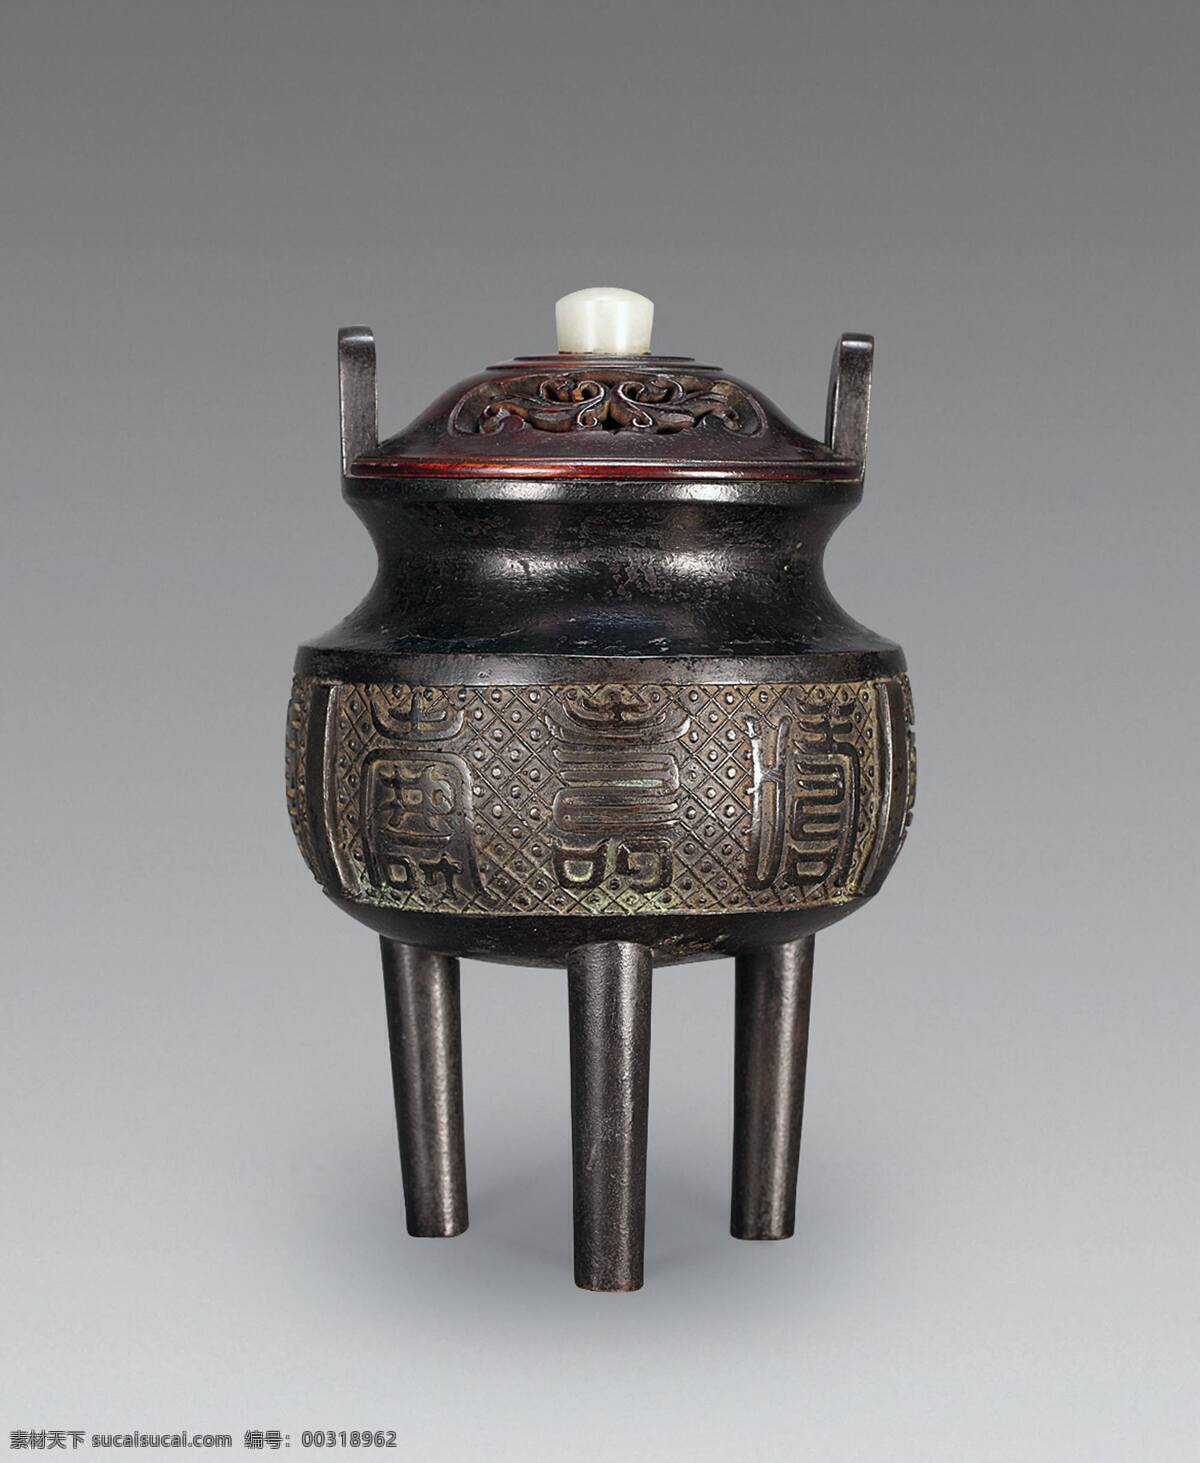 香炉 沉香 瓷器 鼎 香道 文化 古典 古董 文物 收藏 中国传统 中国元素 中国风 传统文化 文化艺术